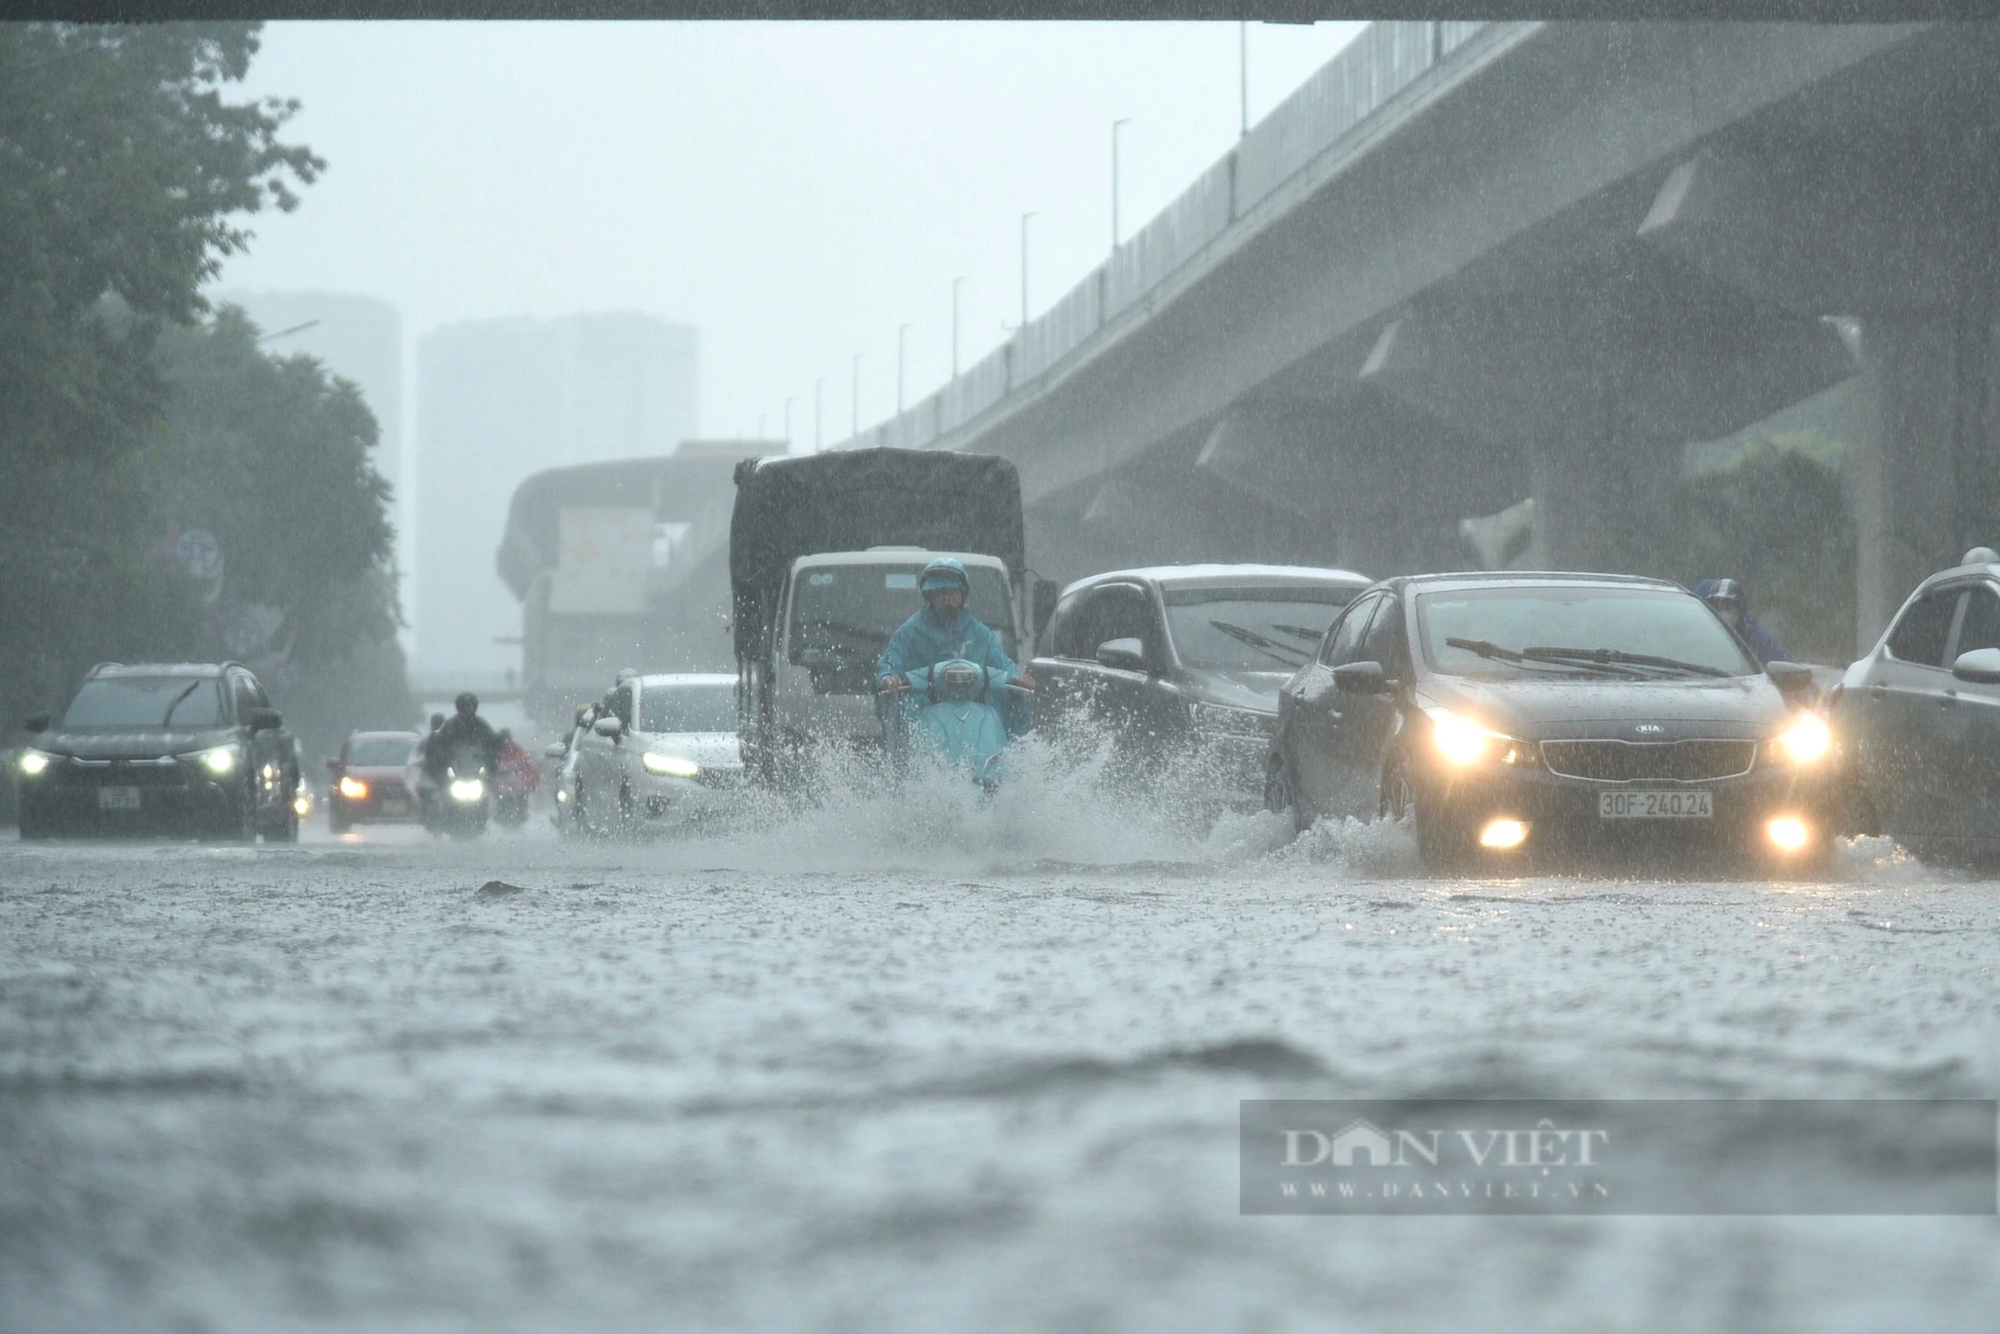 Ngập úng sau mưa lớn, người dân Thủ đô vật vã trên đường đi làm- Ảnh 1.